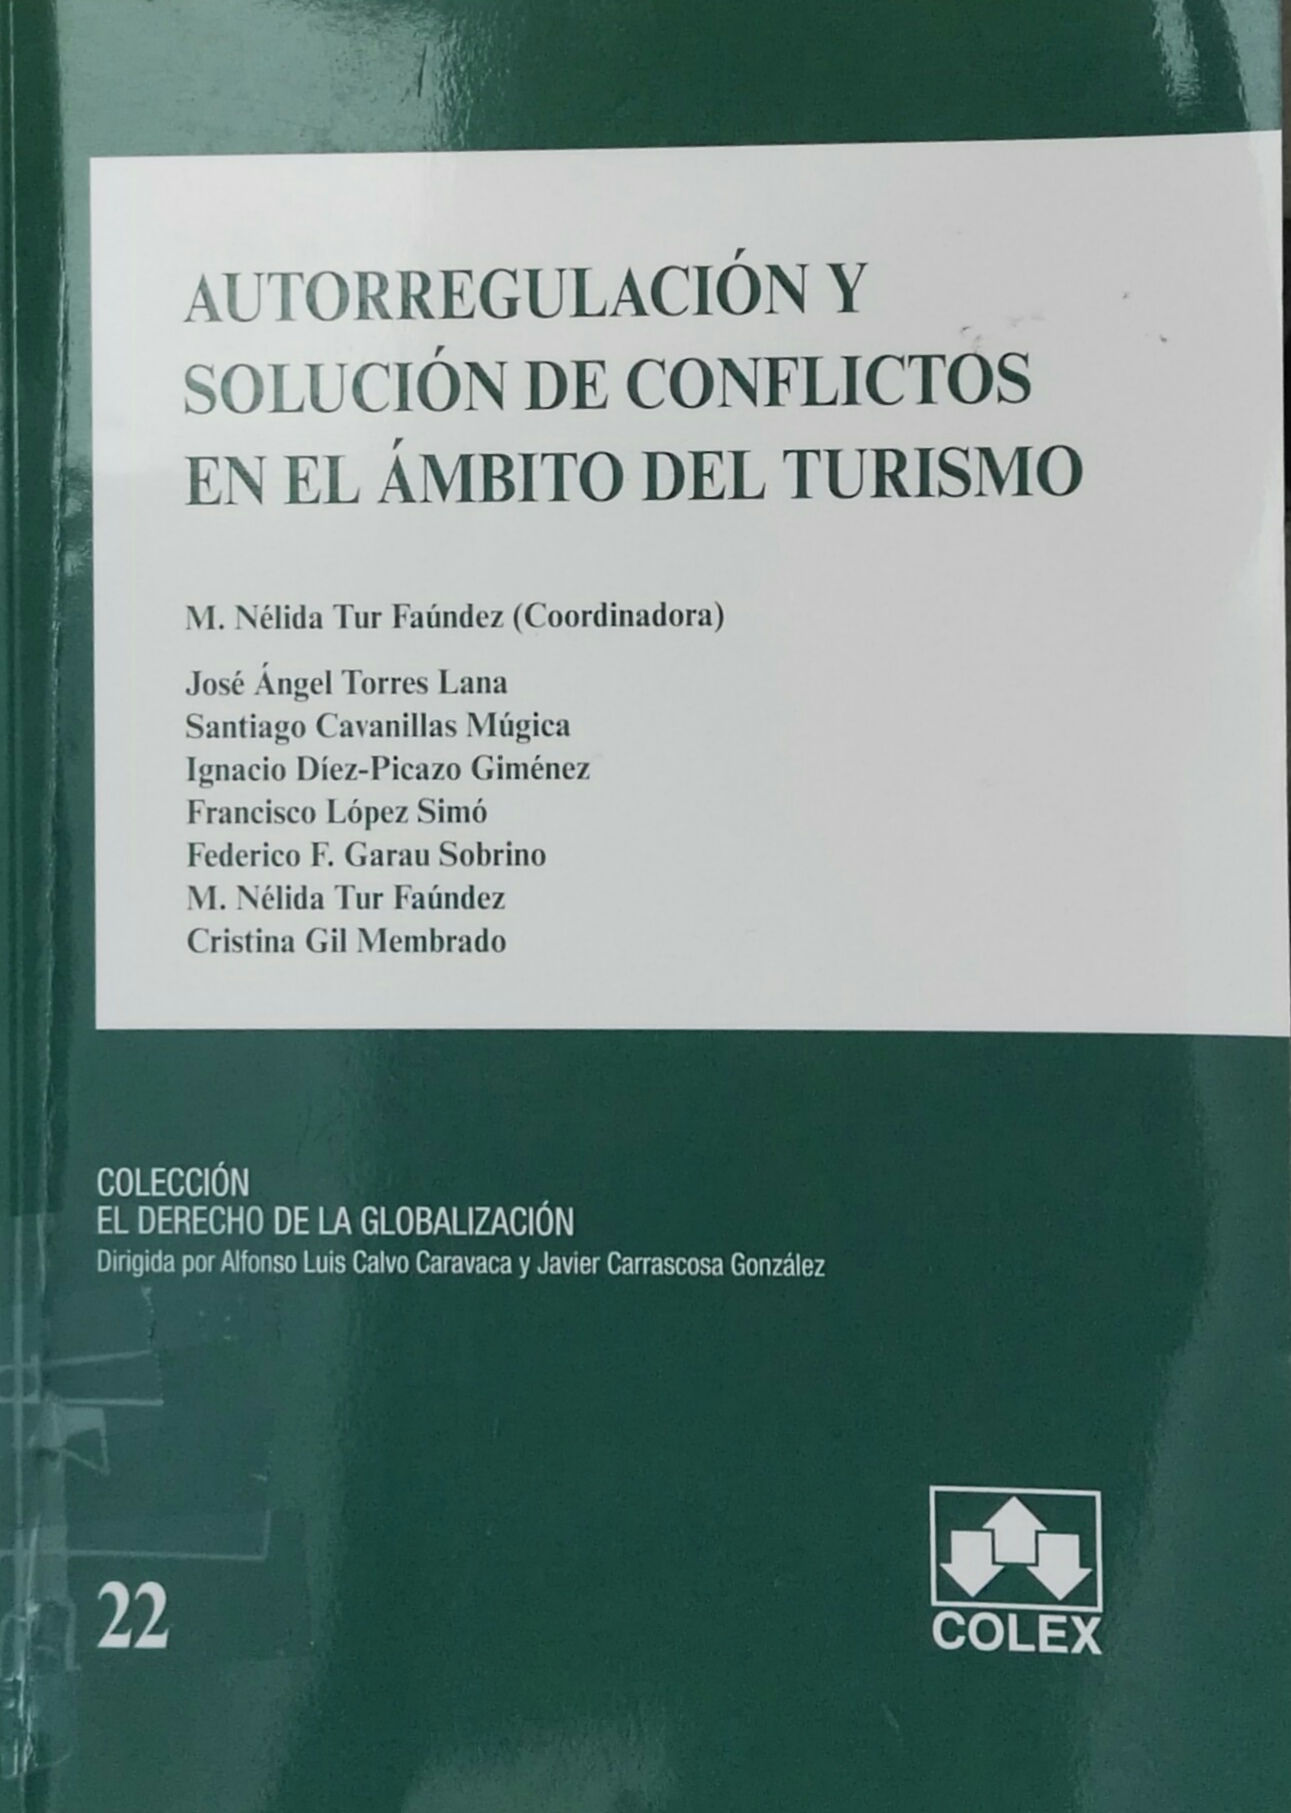 Imagen de portada del libro Autorregulación y solución de conflictos en el ámbito del turismo